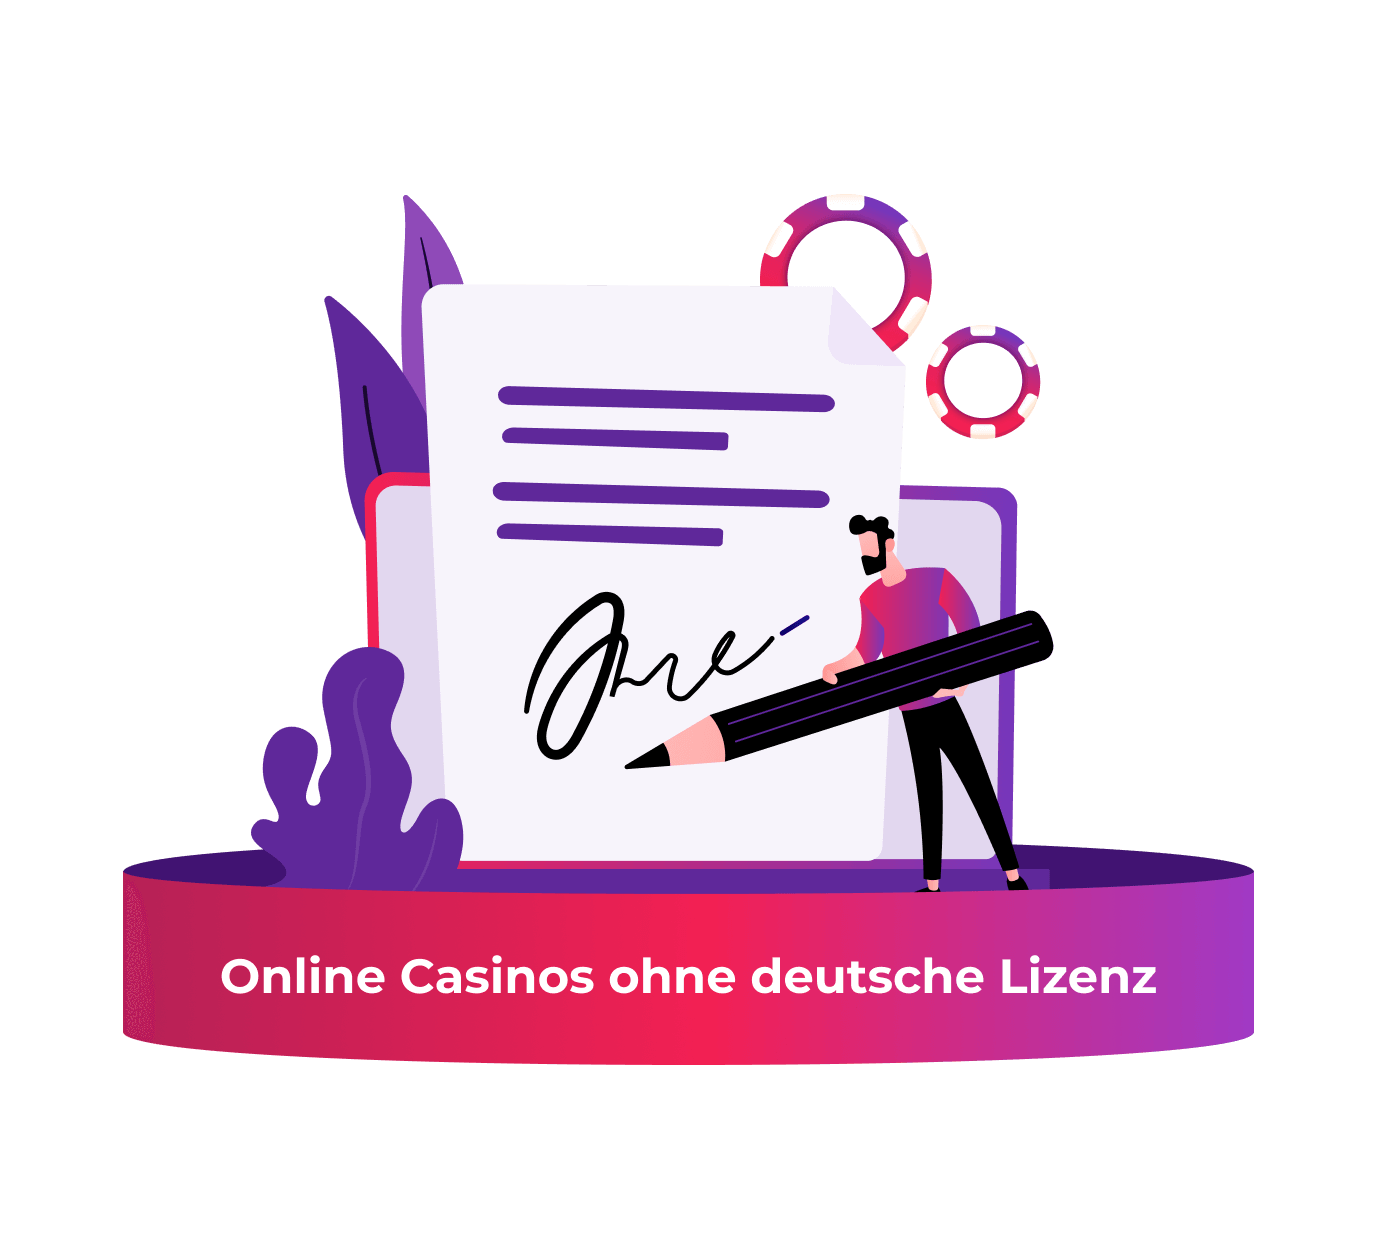 Online Casino Österreich legal: Eine unglaublich einfache Methode, die für alle funktioniert